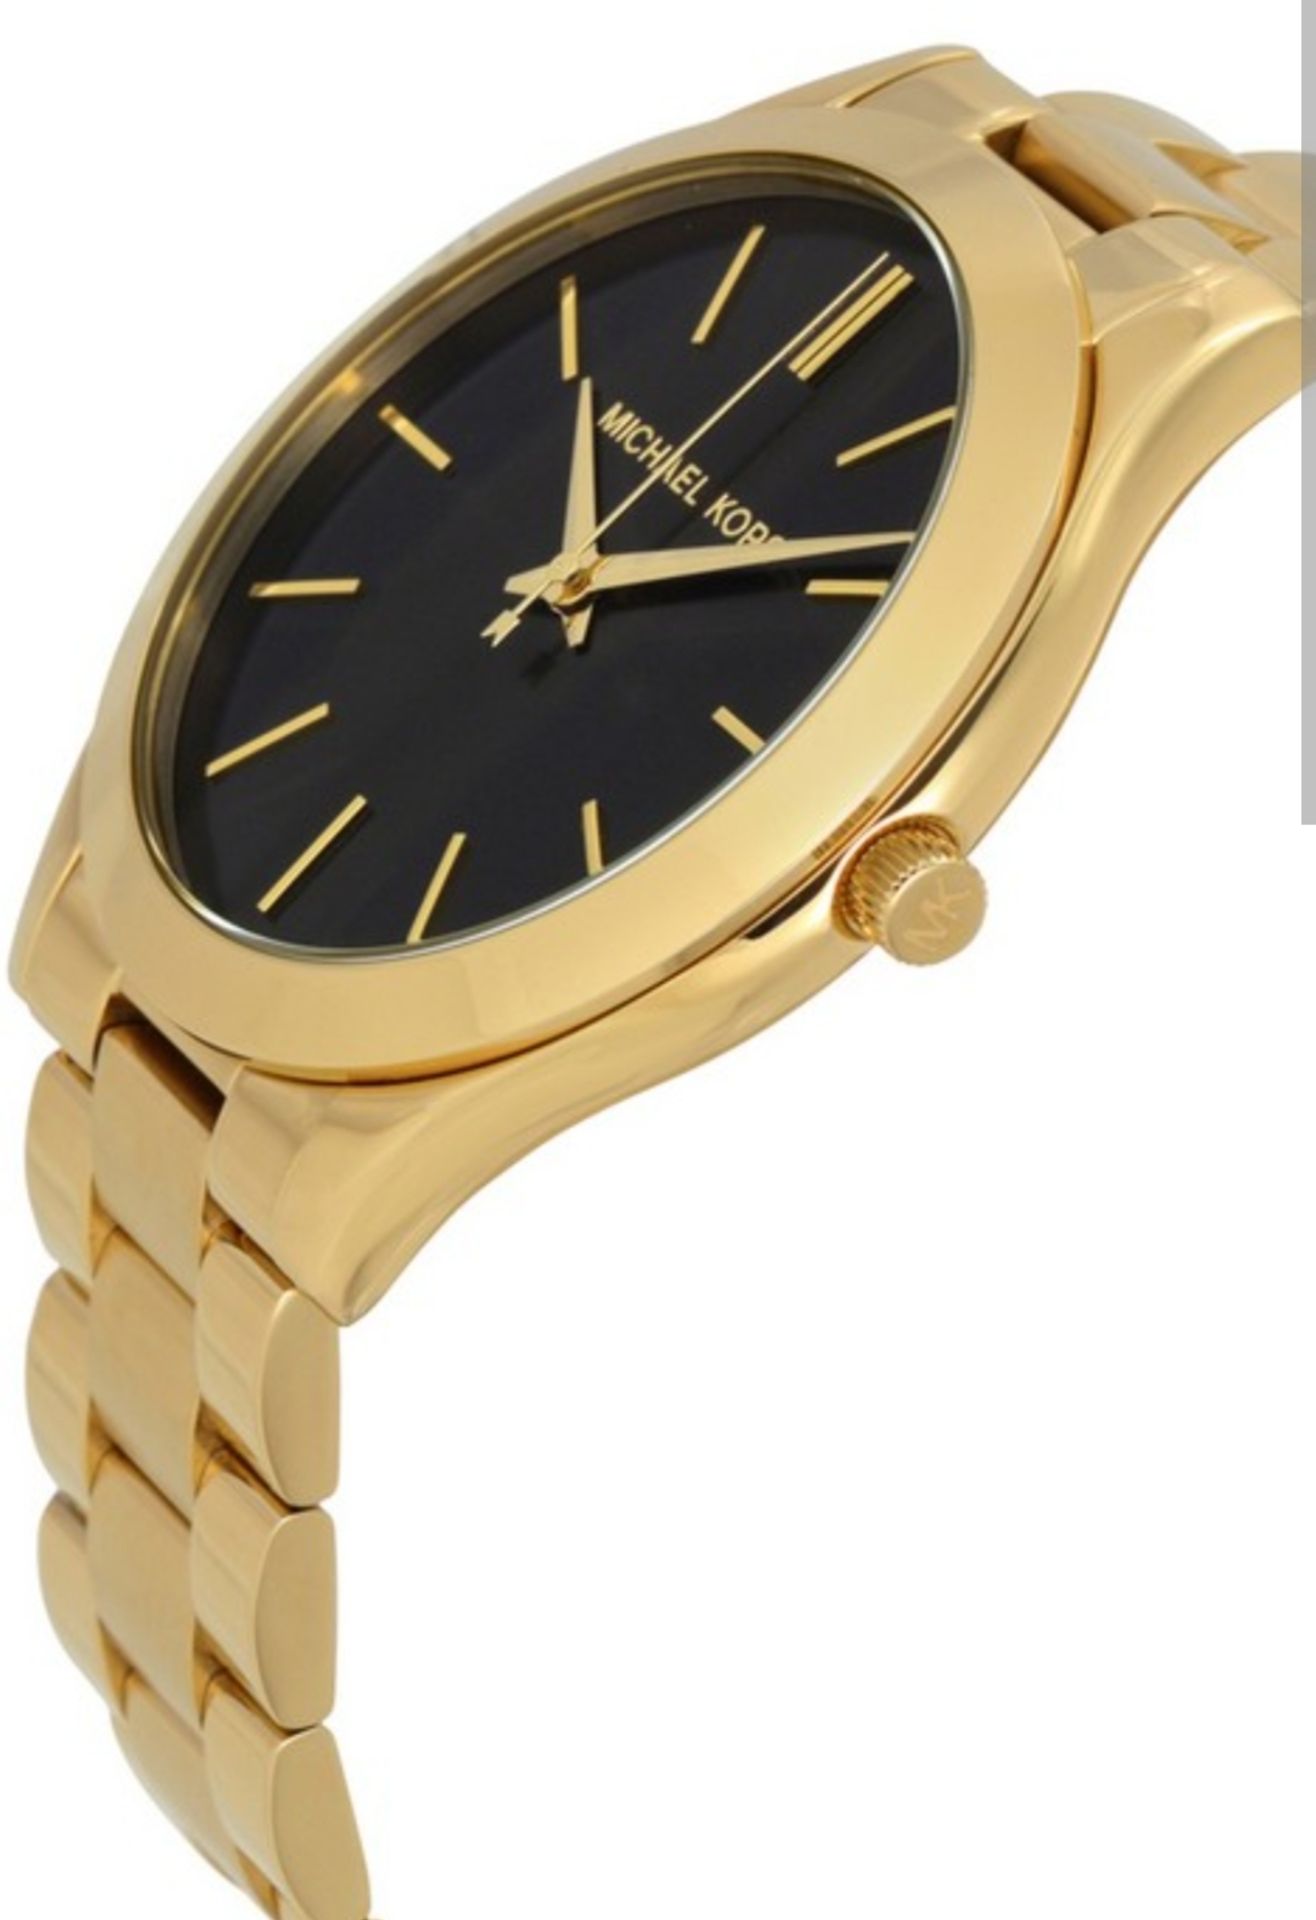 Michael Kors MK3478 Ladies Slim Runway Watch Gold Bracelet Black Dial - Image 8 of 9